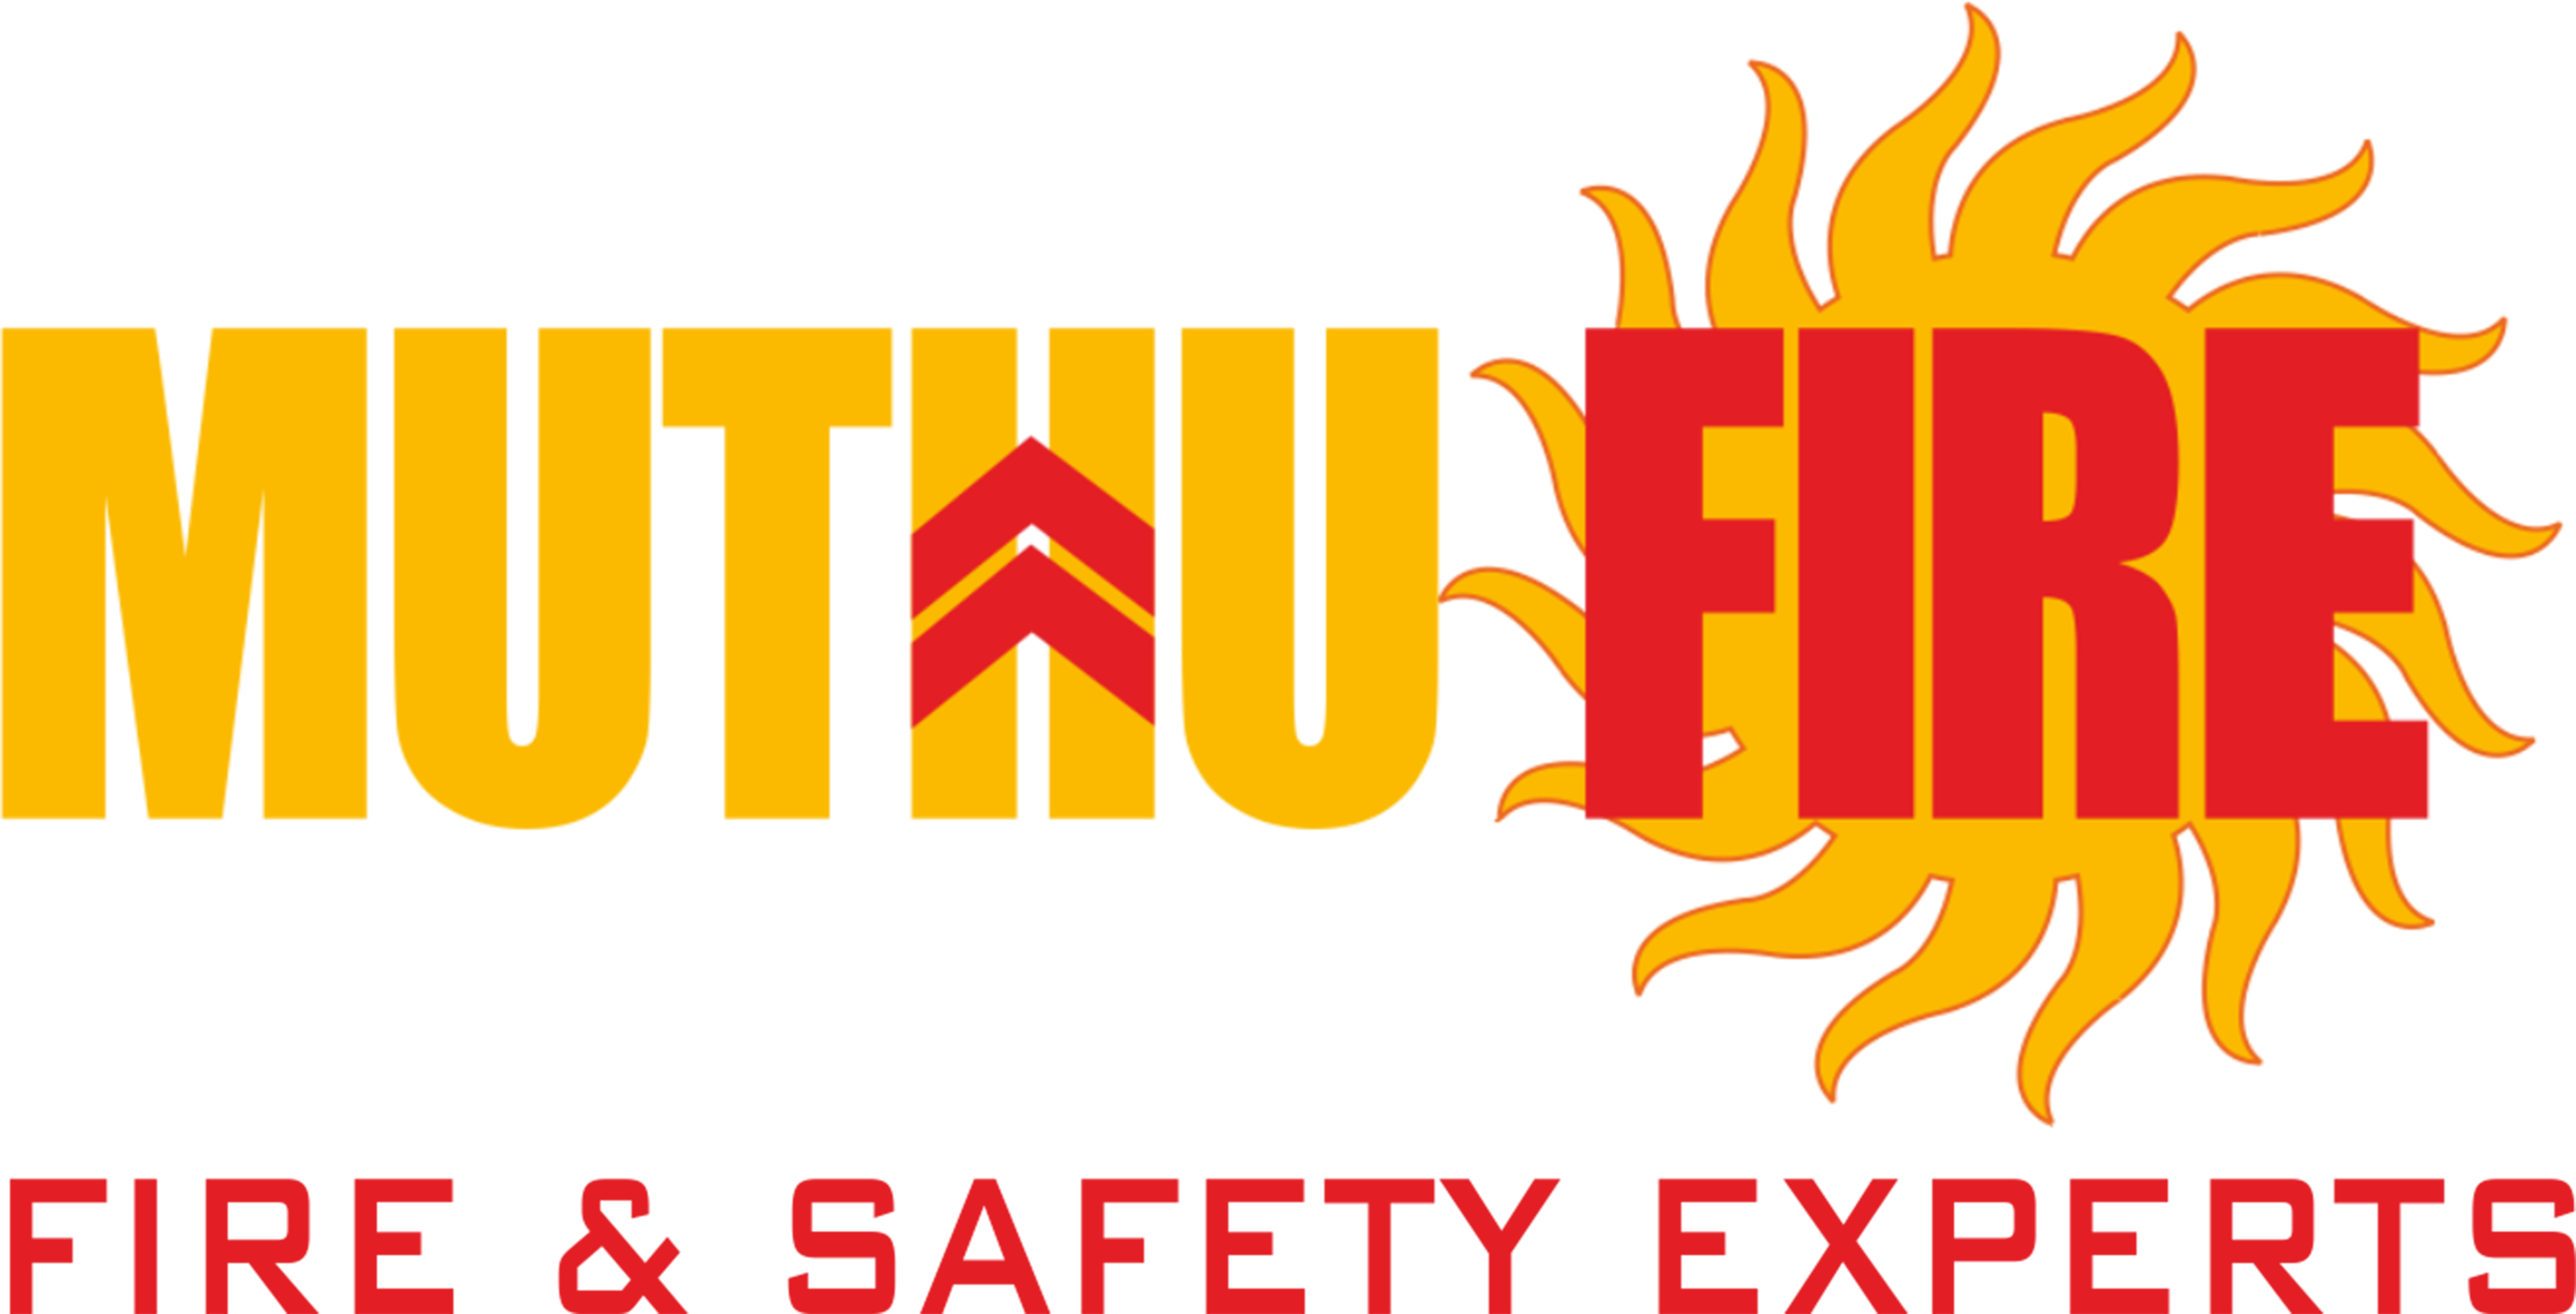 Muthu Fire